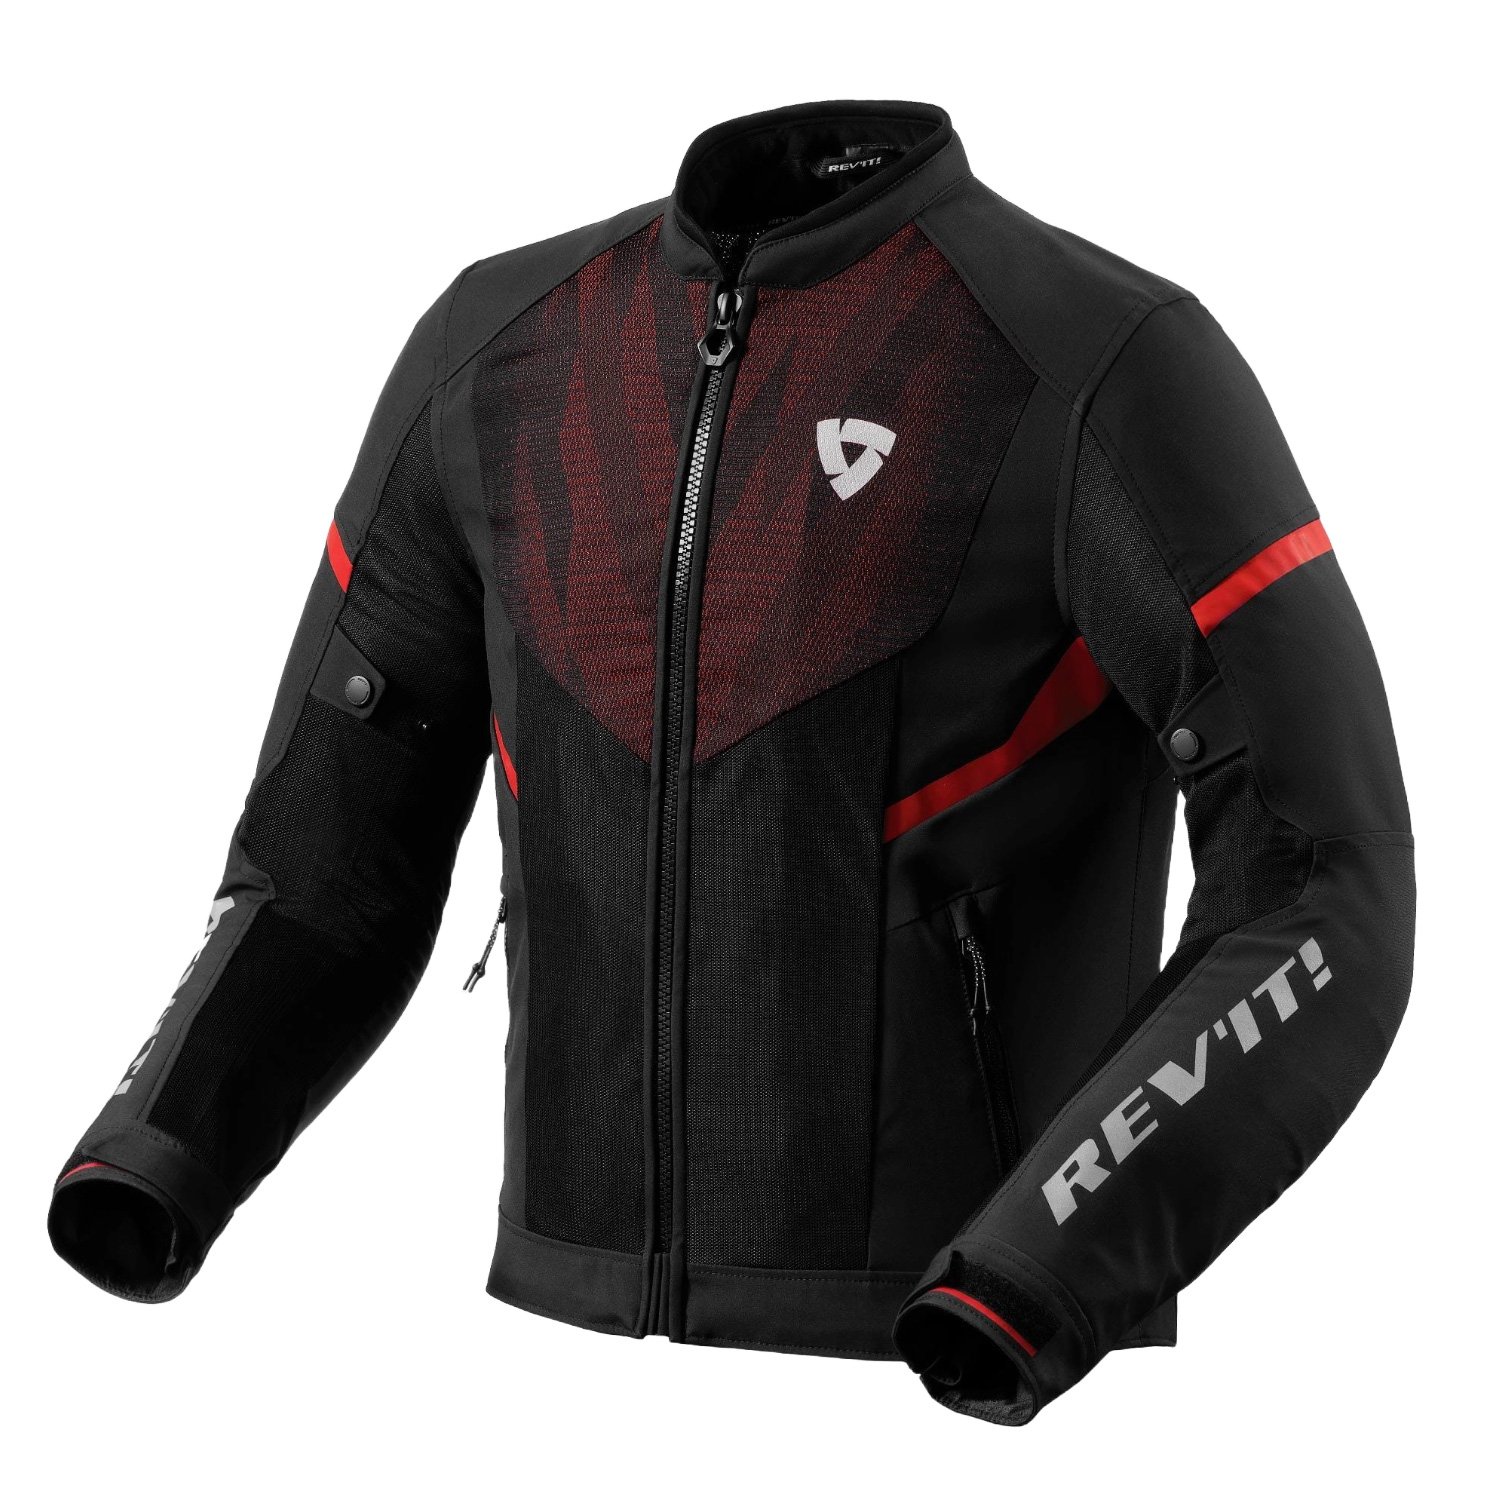 Image of REV'IT! Hyperspeed 2 GT Air Jacket Black Neon Red Size S EN